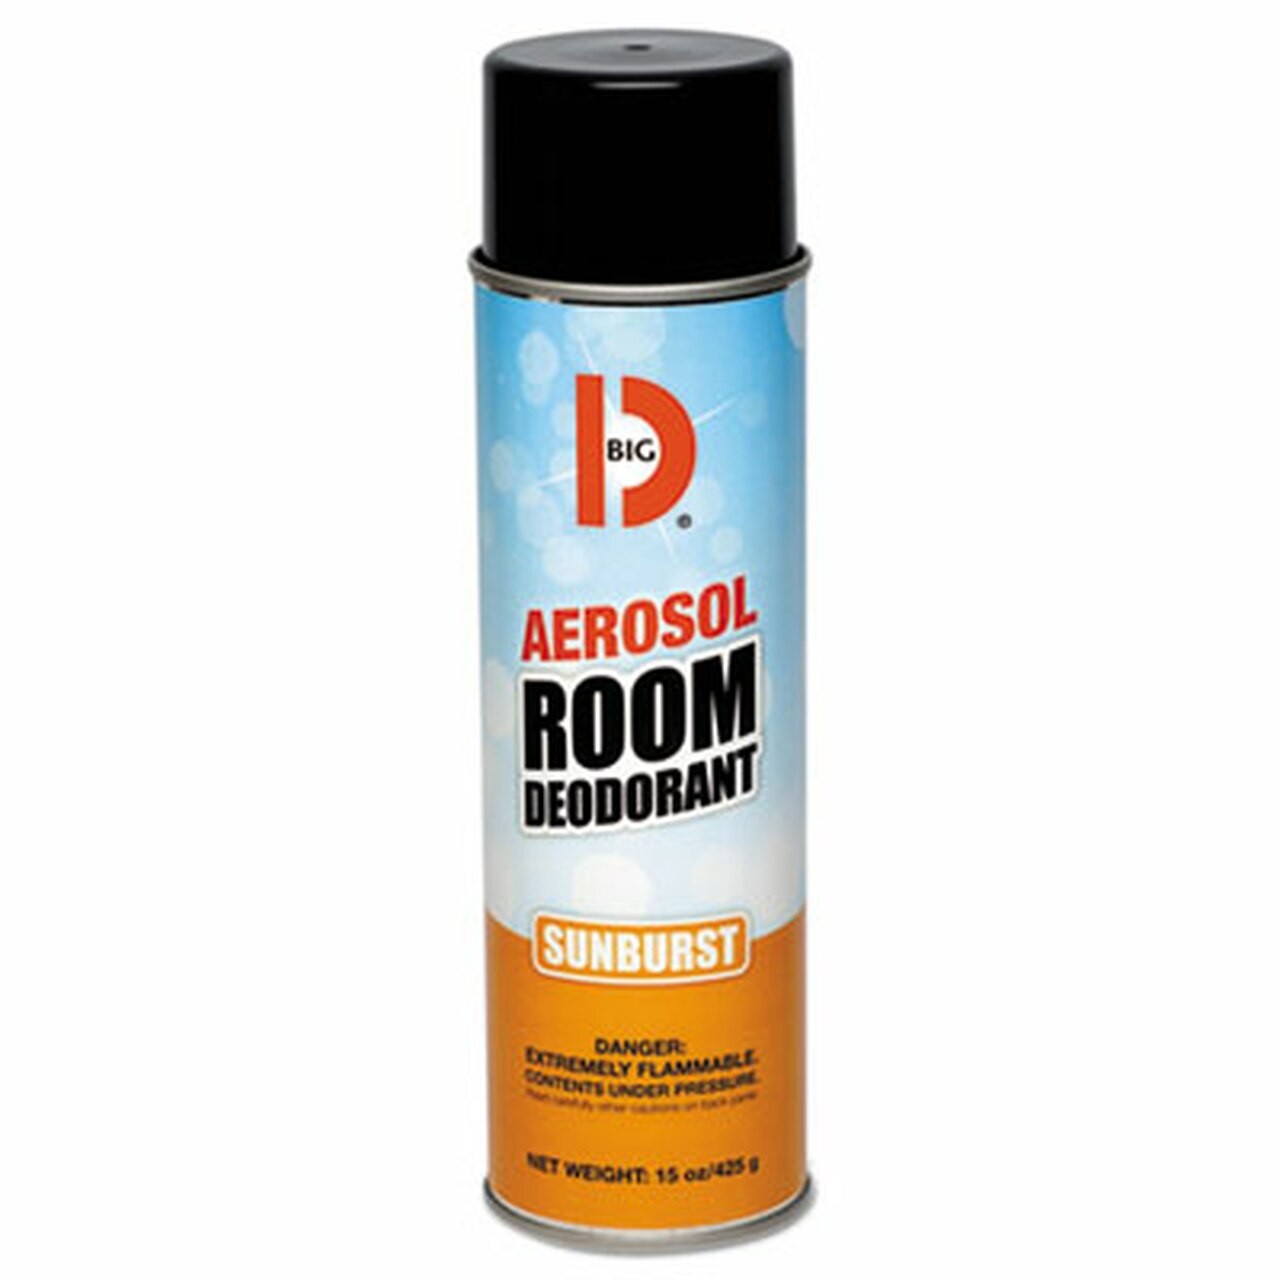 Aerosol Room Deodorant, Sunburst Scent, 15 oz Can, 12/Carton